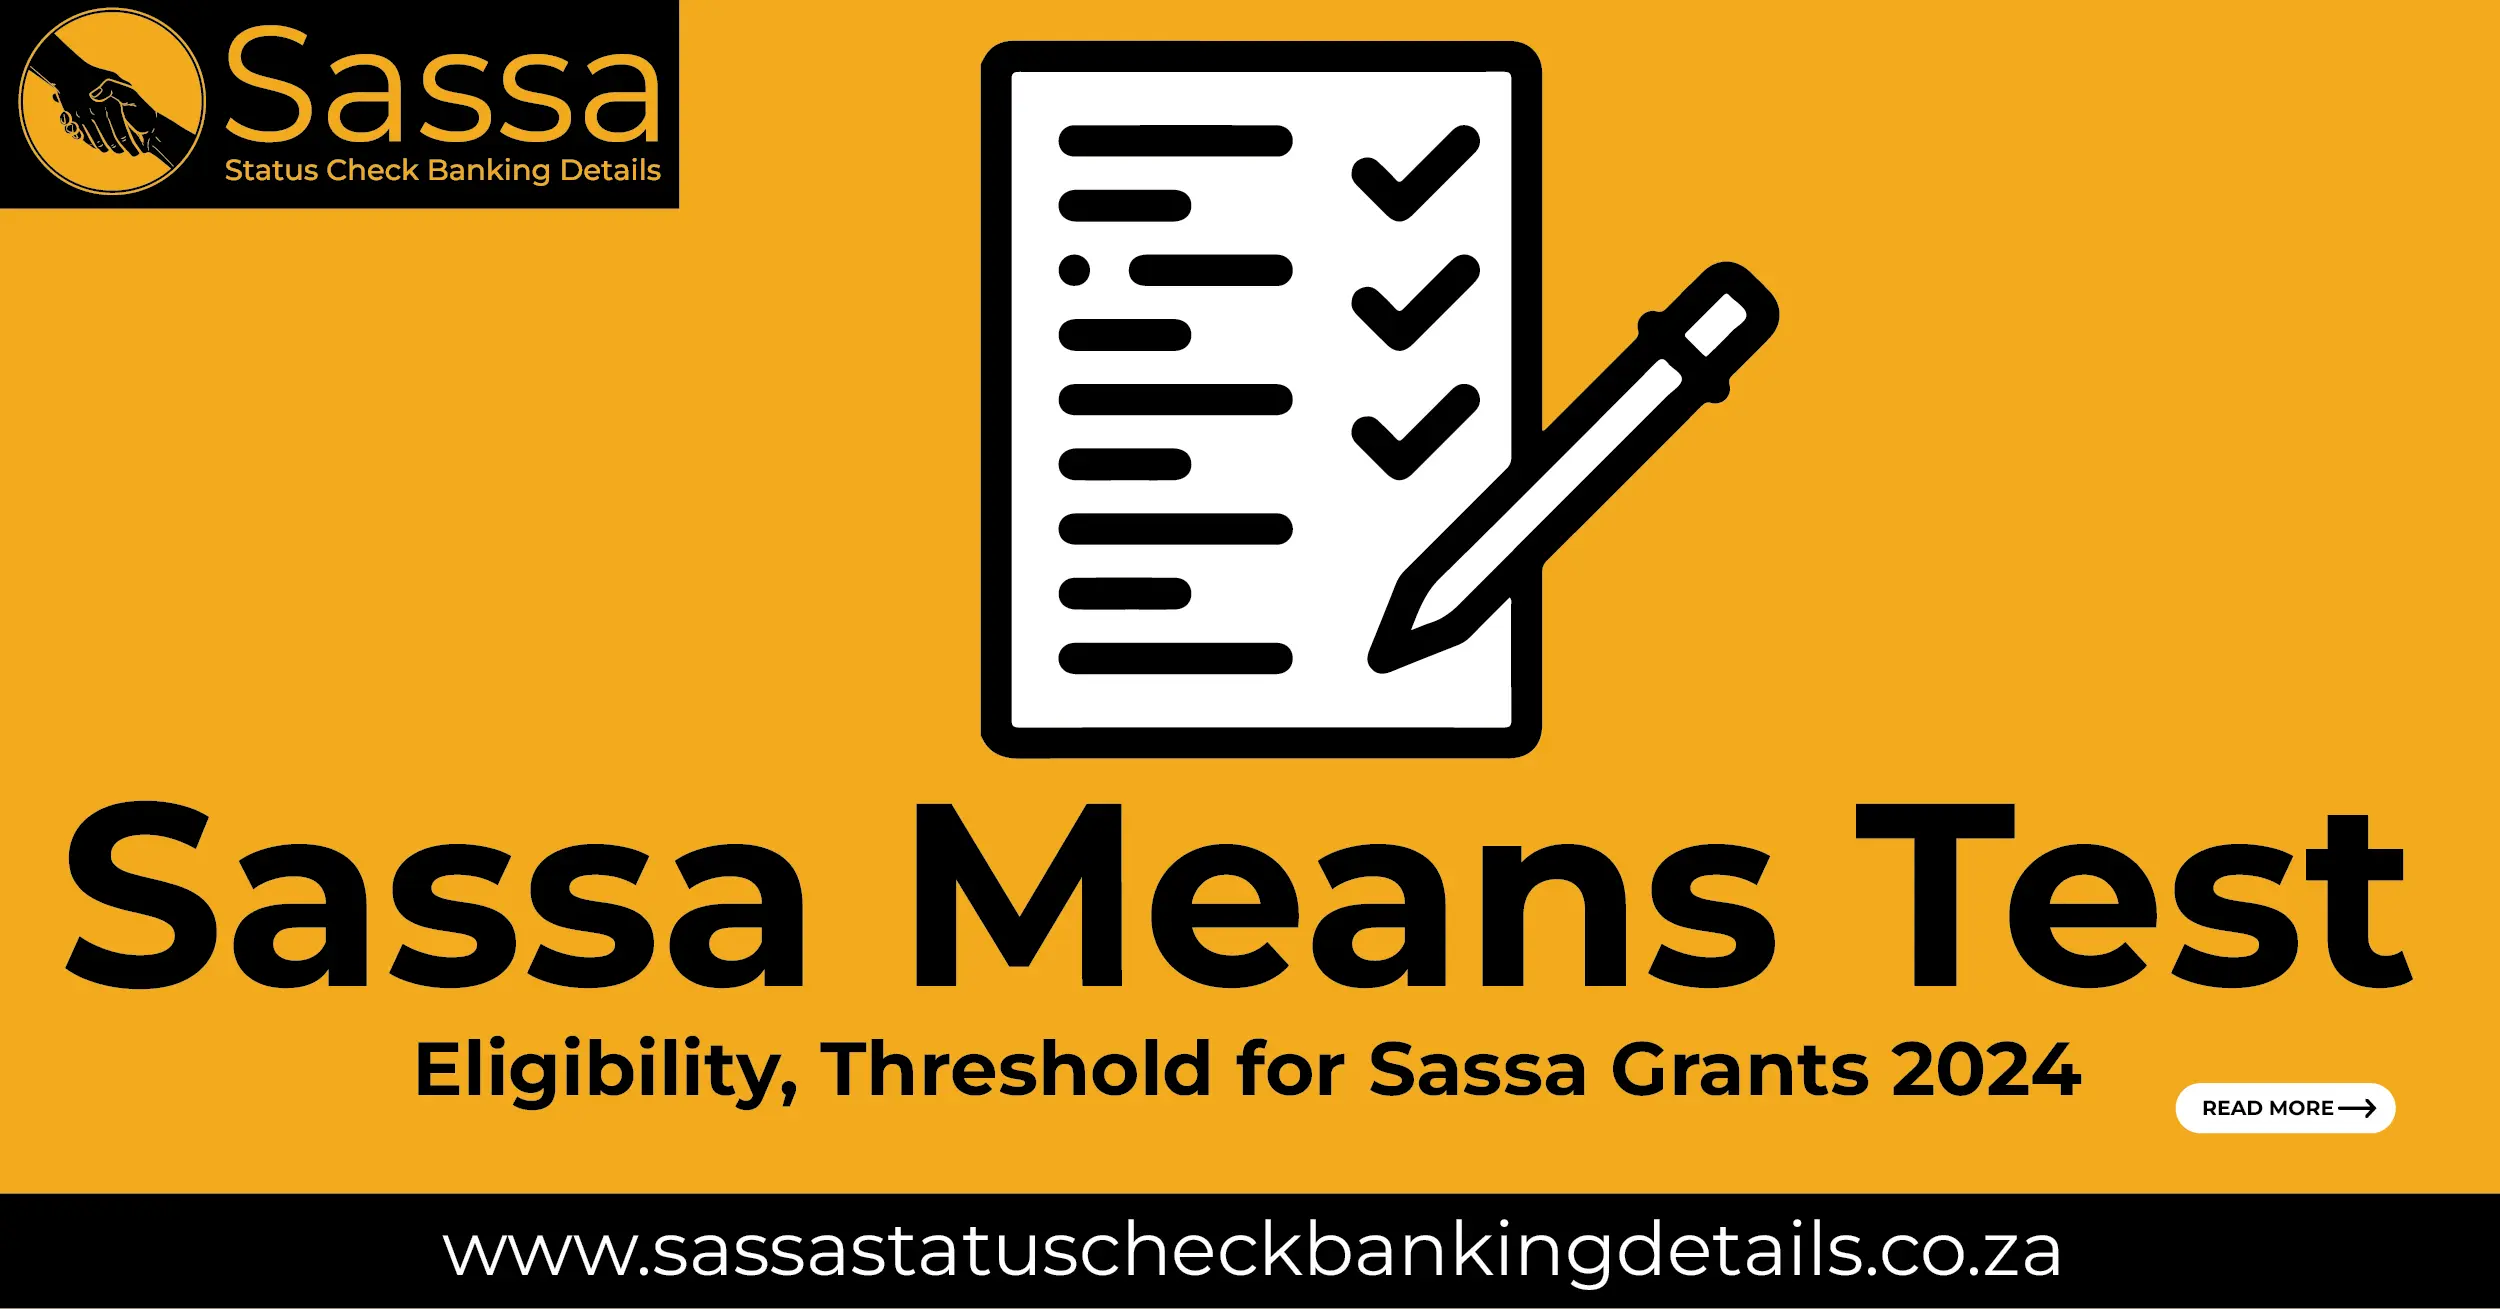 Sassa Means Test: Eligibility, Threshold for Sassa Grants 2024